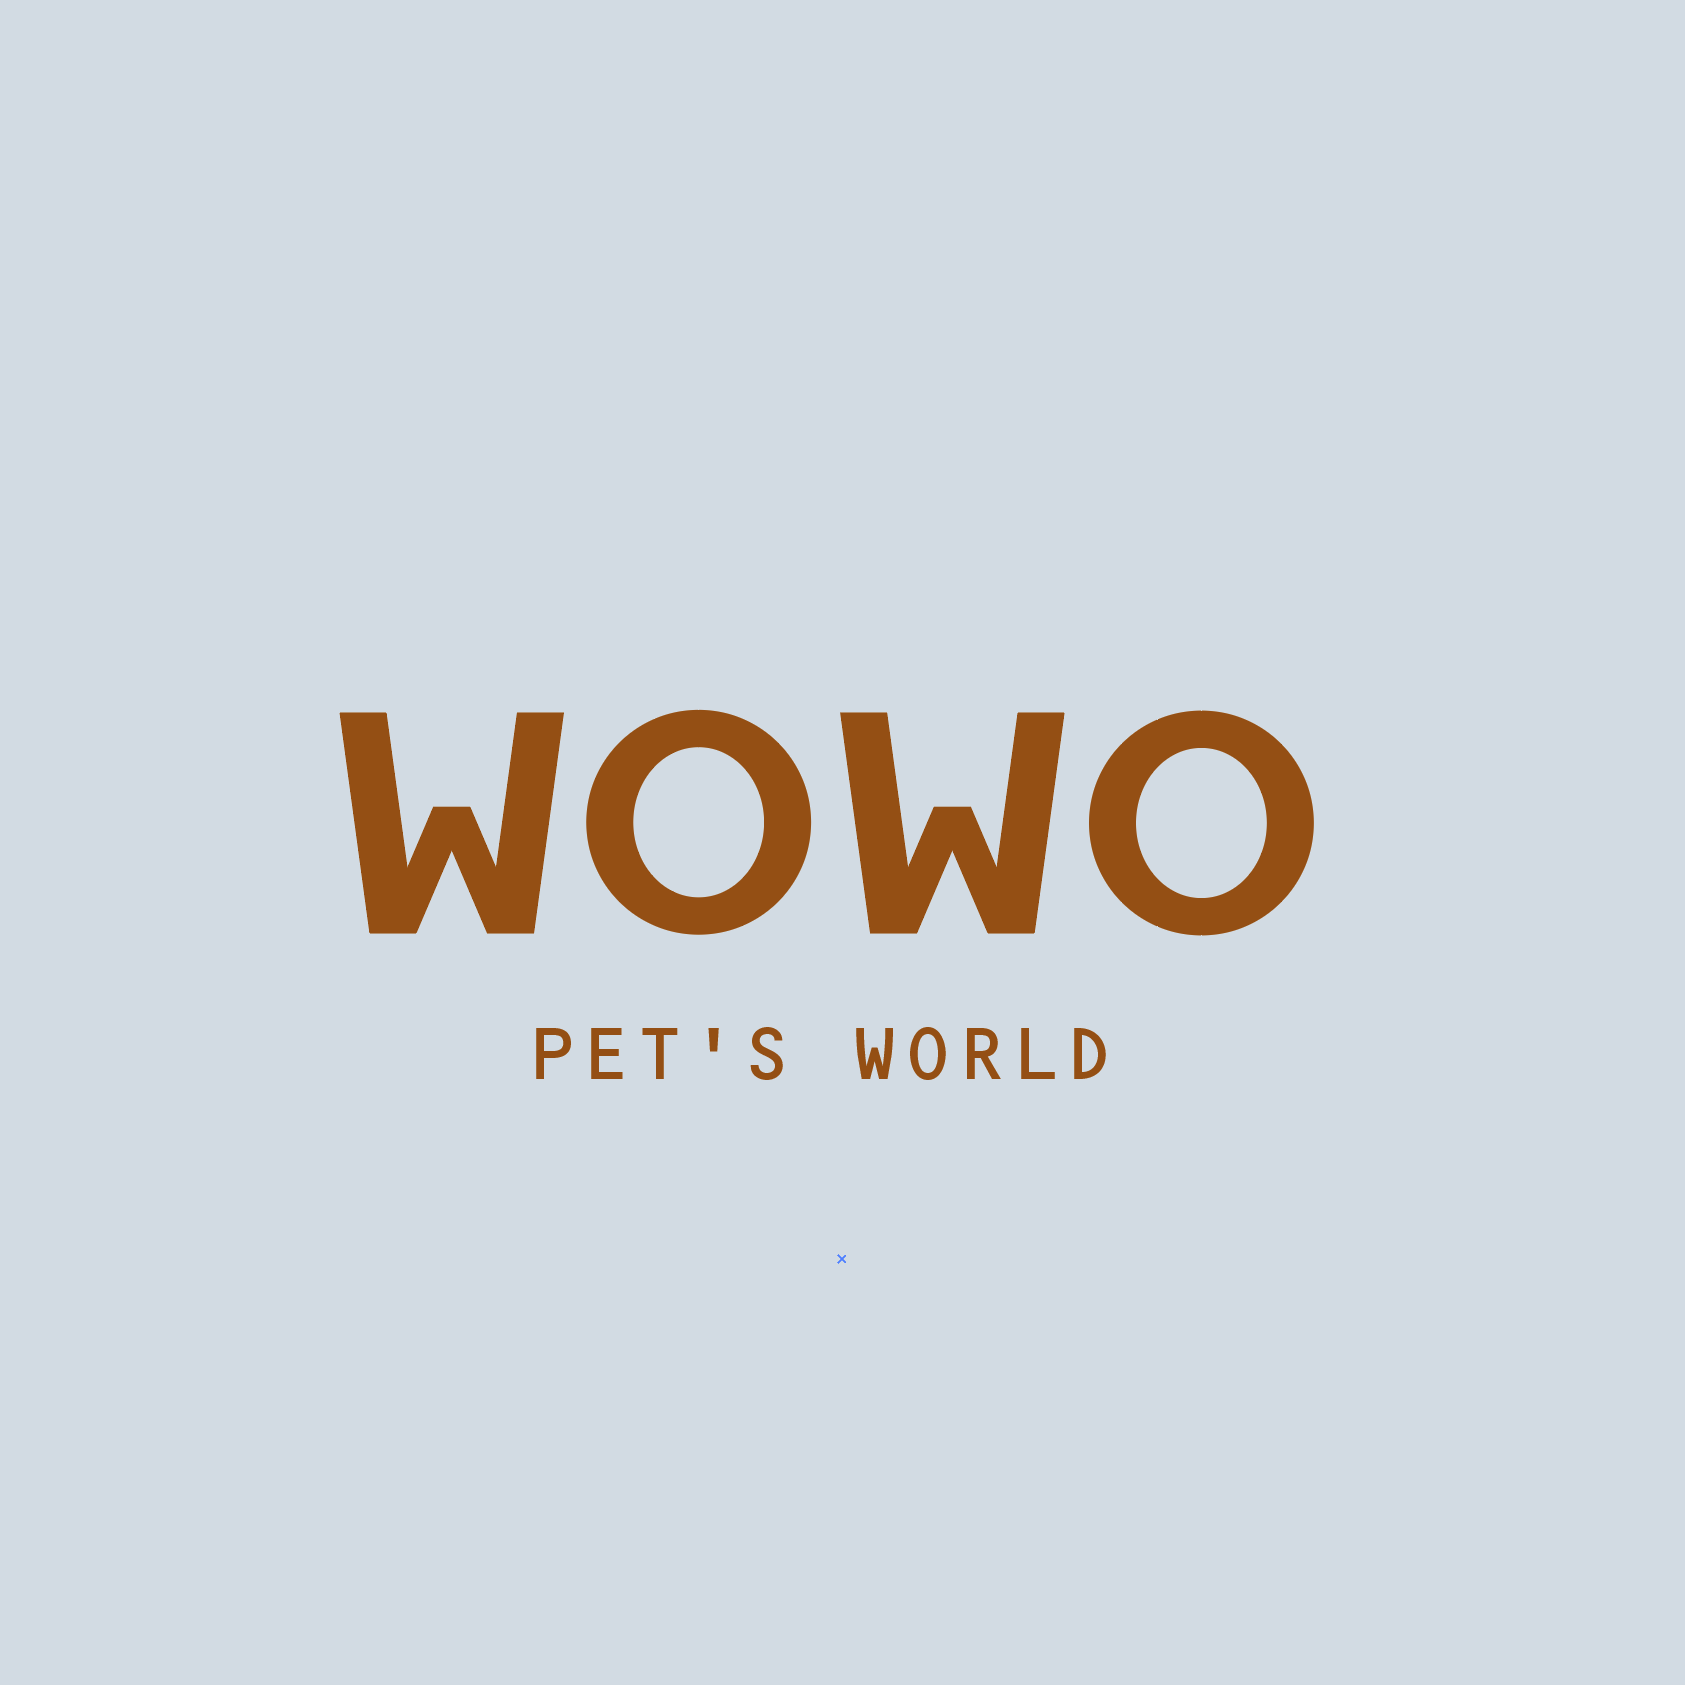 Wowo Pet's World